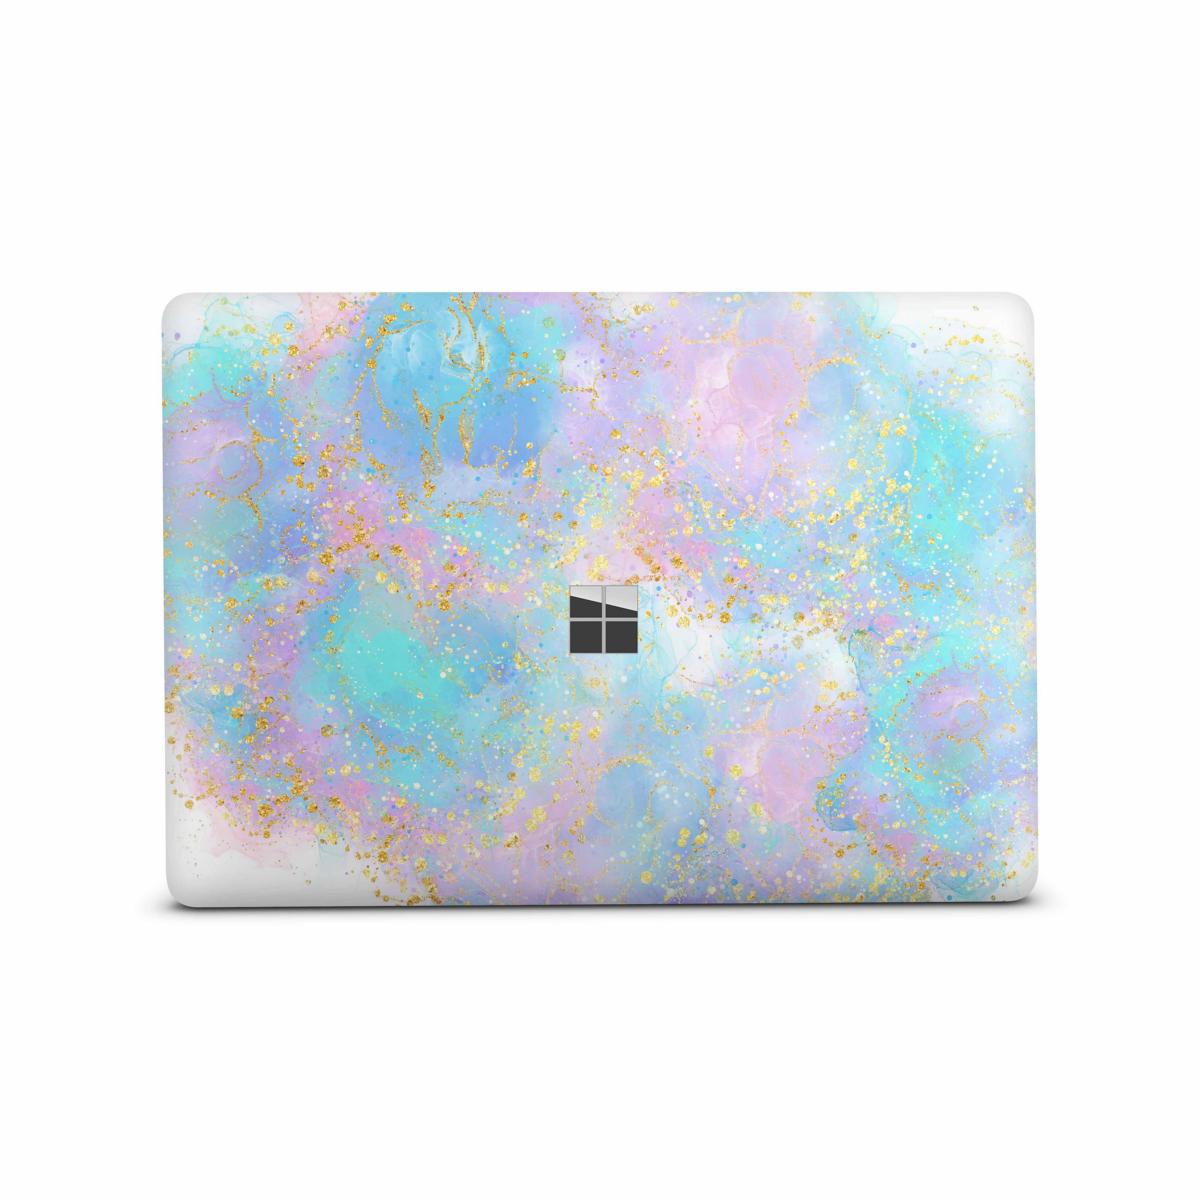 Microsoft Surface Book 2 Skin 15" Premium Vinylfolie Kratzerschutz Design Pink blue Glitter Elektronik-Sticker & -Aufkleber Skins4u   